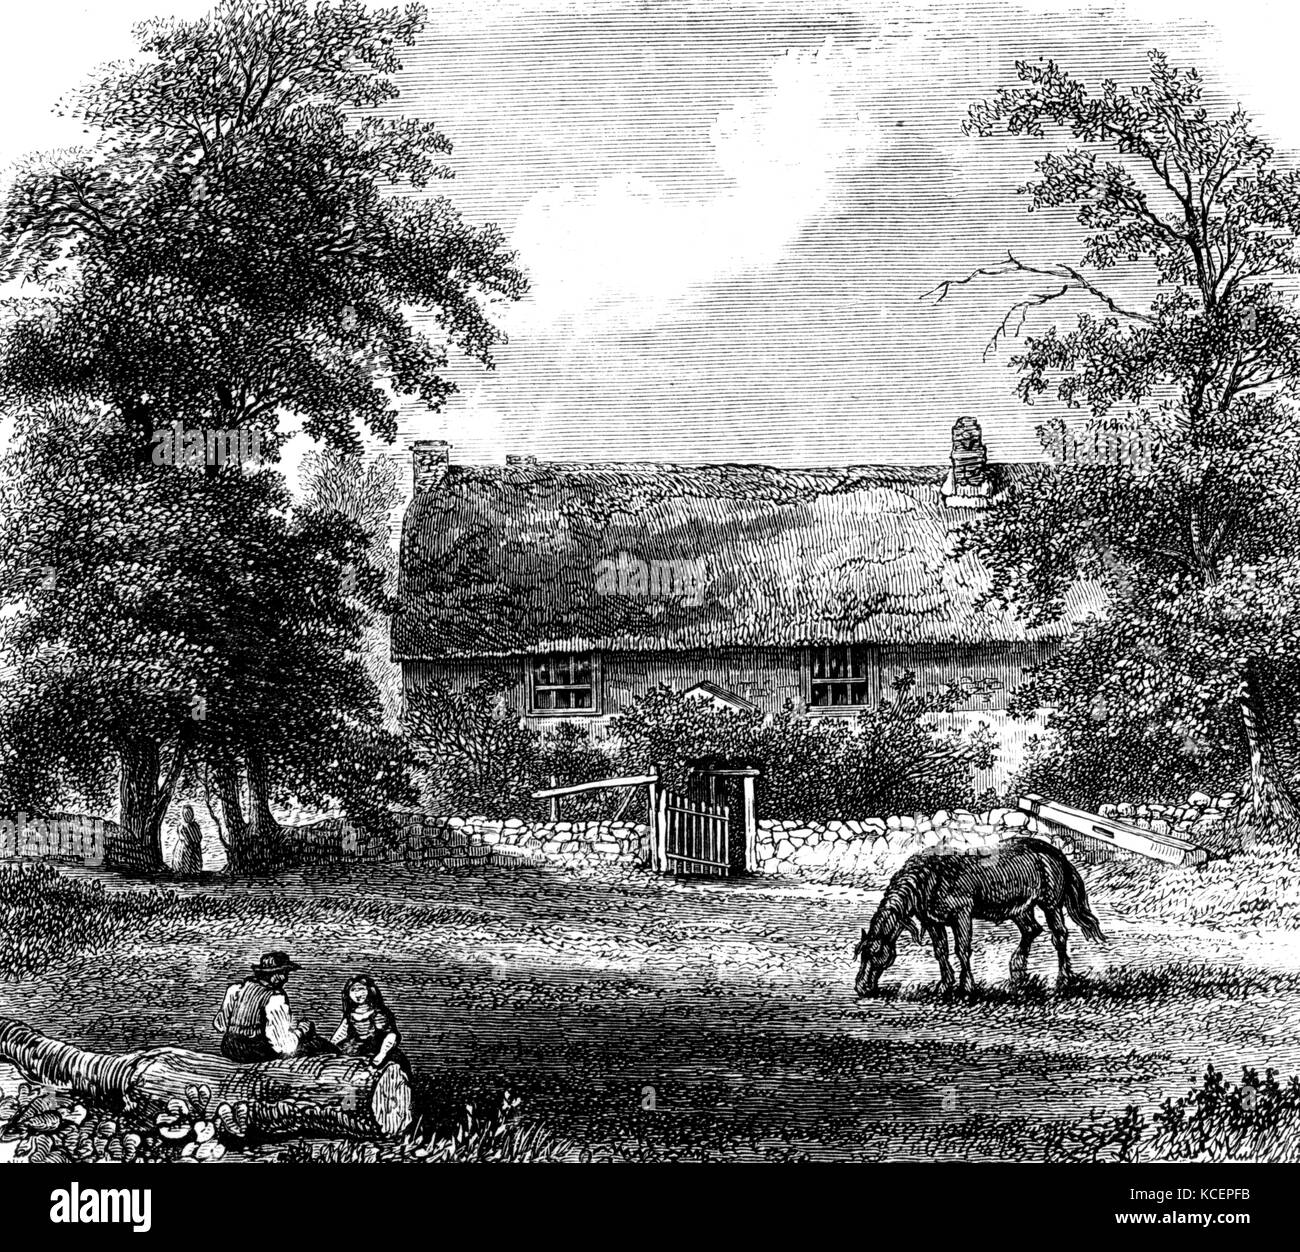 La ilustración representa a la infancia, el hogar de Richard Trevithick (1771-1833) un inventor británico y el ingeniero de minas. Fecha del siglo XIX Foto de stock